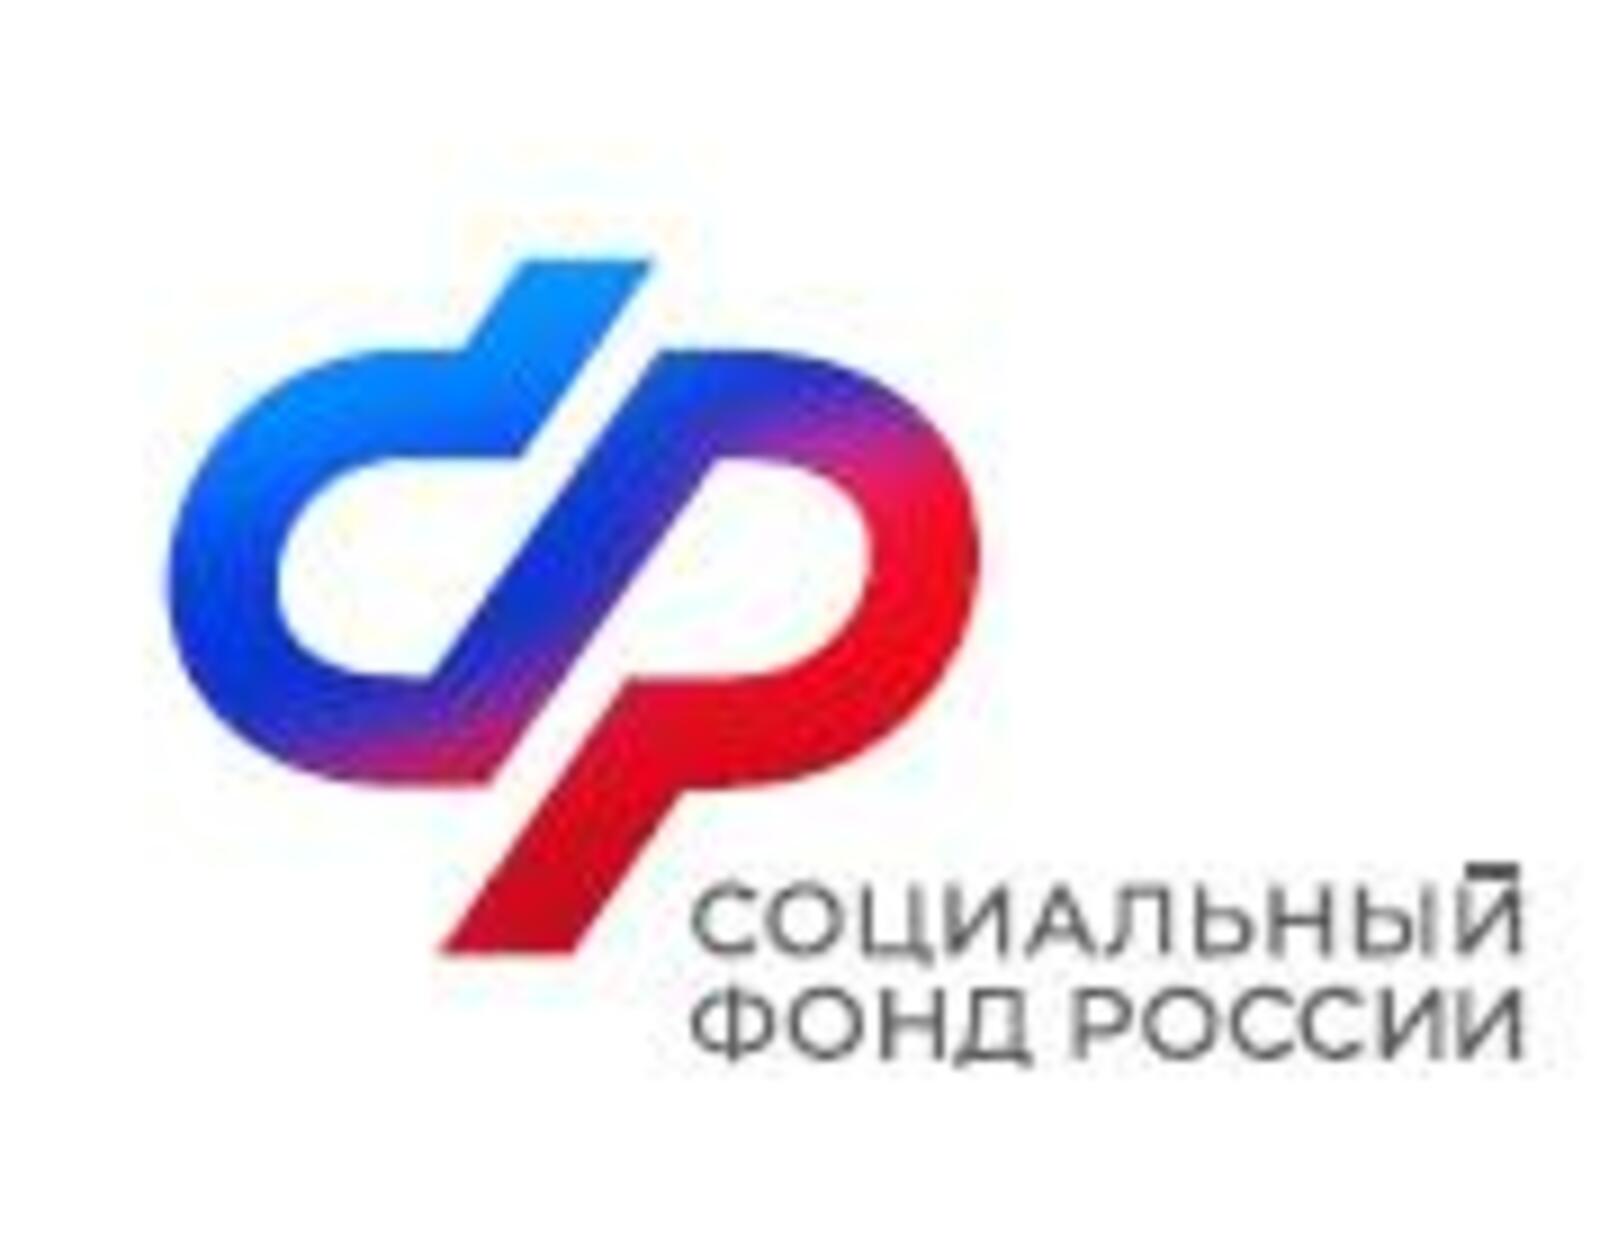 Жители Республики Башкортостан с января начнут получать повышенные выплаты Социального фонда России